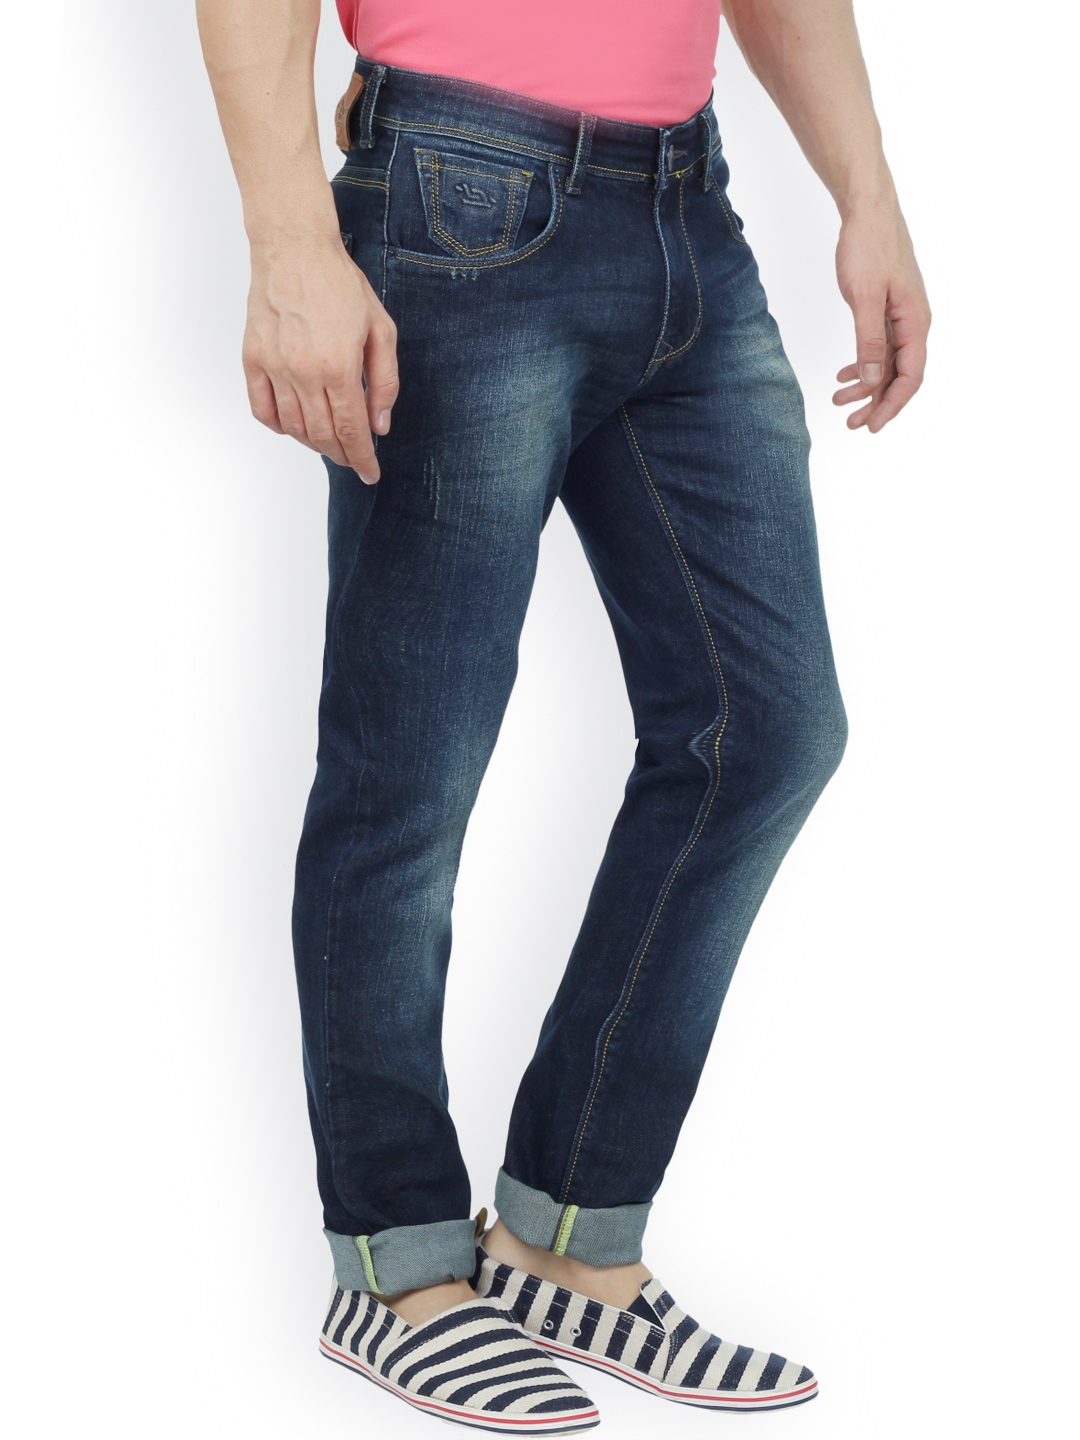 Myntra LEONIDAS Men Blue Jeans 772344 | Buy Myntra LEONIDAS Jeans at ...